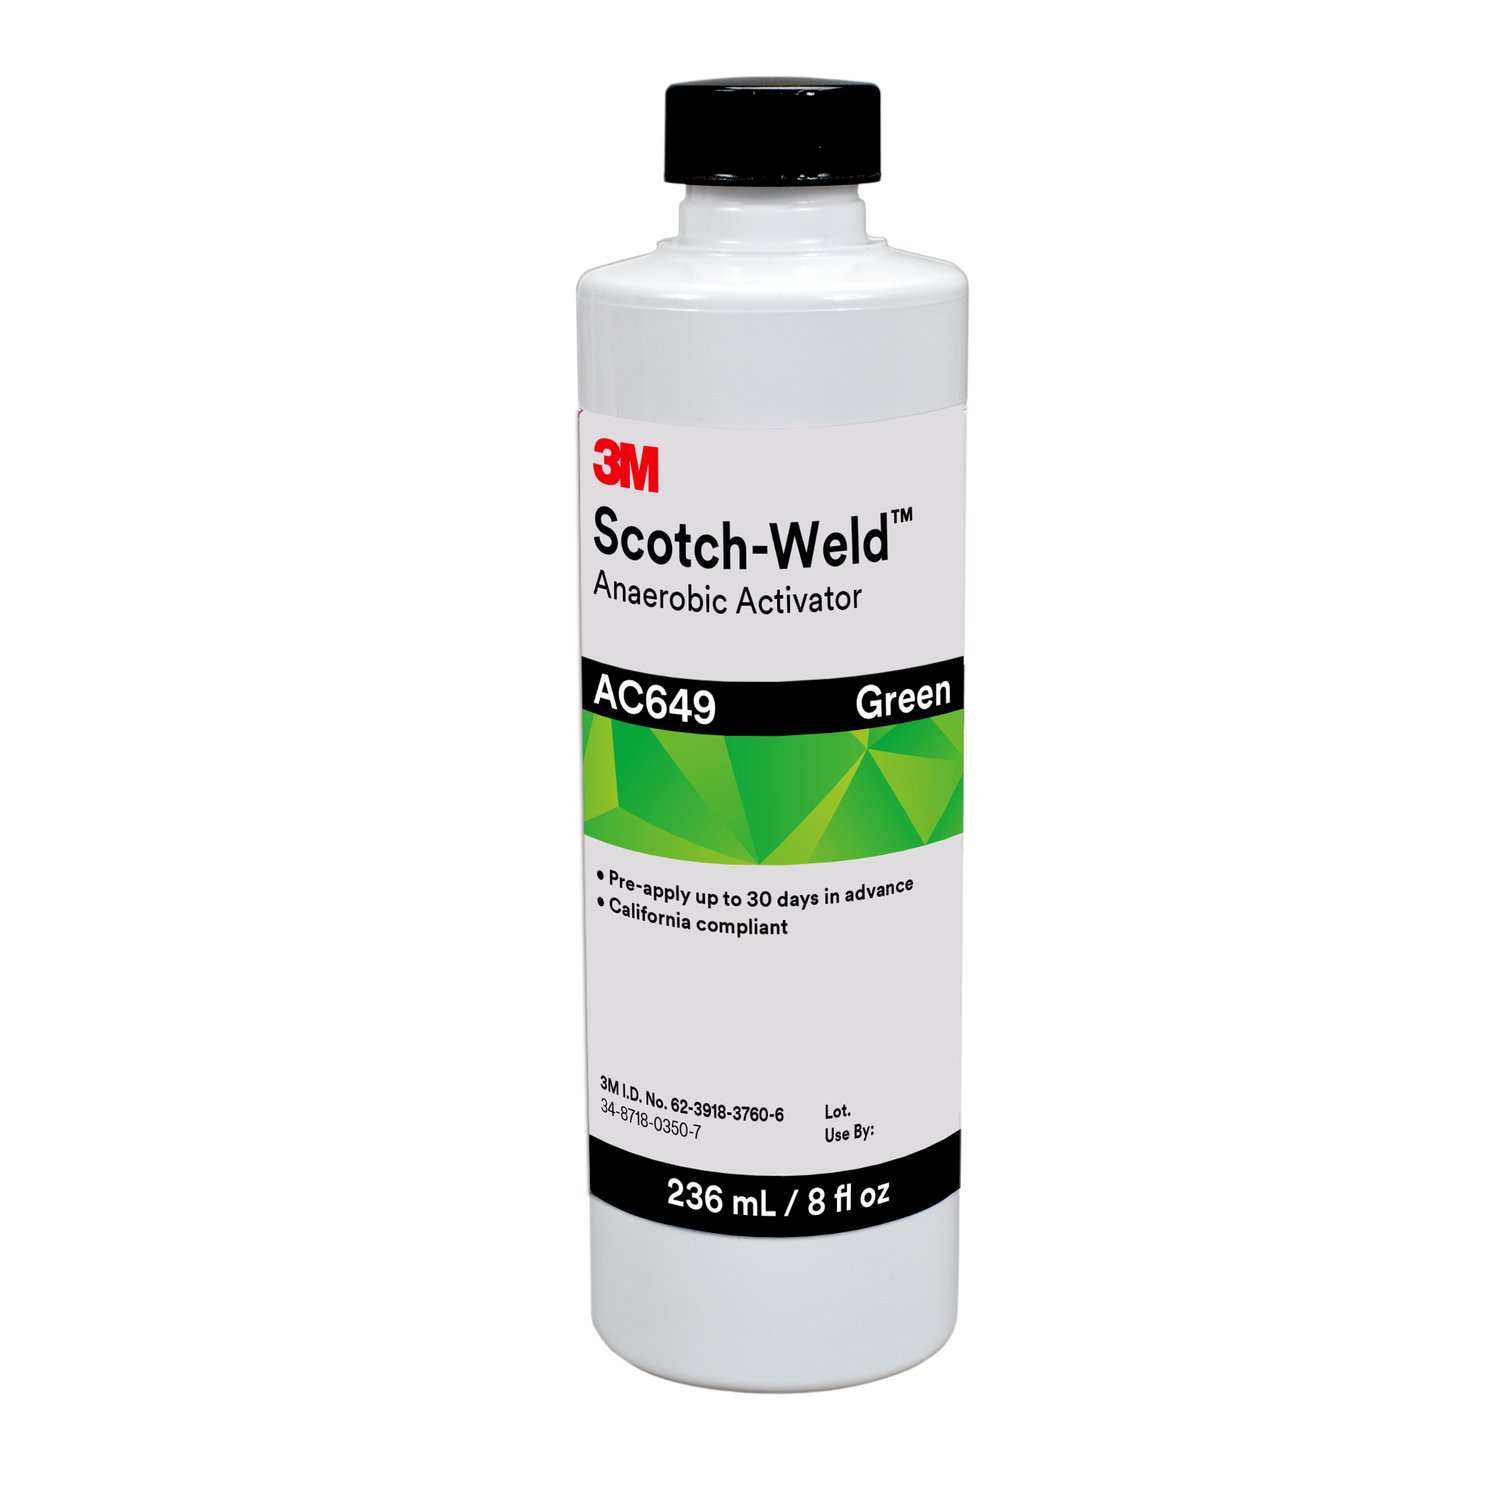 7010367620 - 3M Scotch-Weld Anaerobic Activator AC649, Green, 8 fl oz Bottle,
4/case